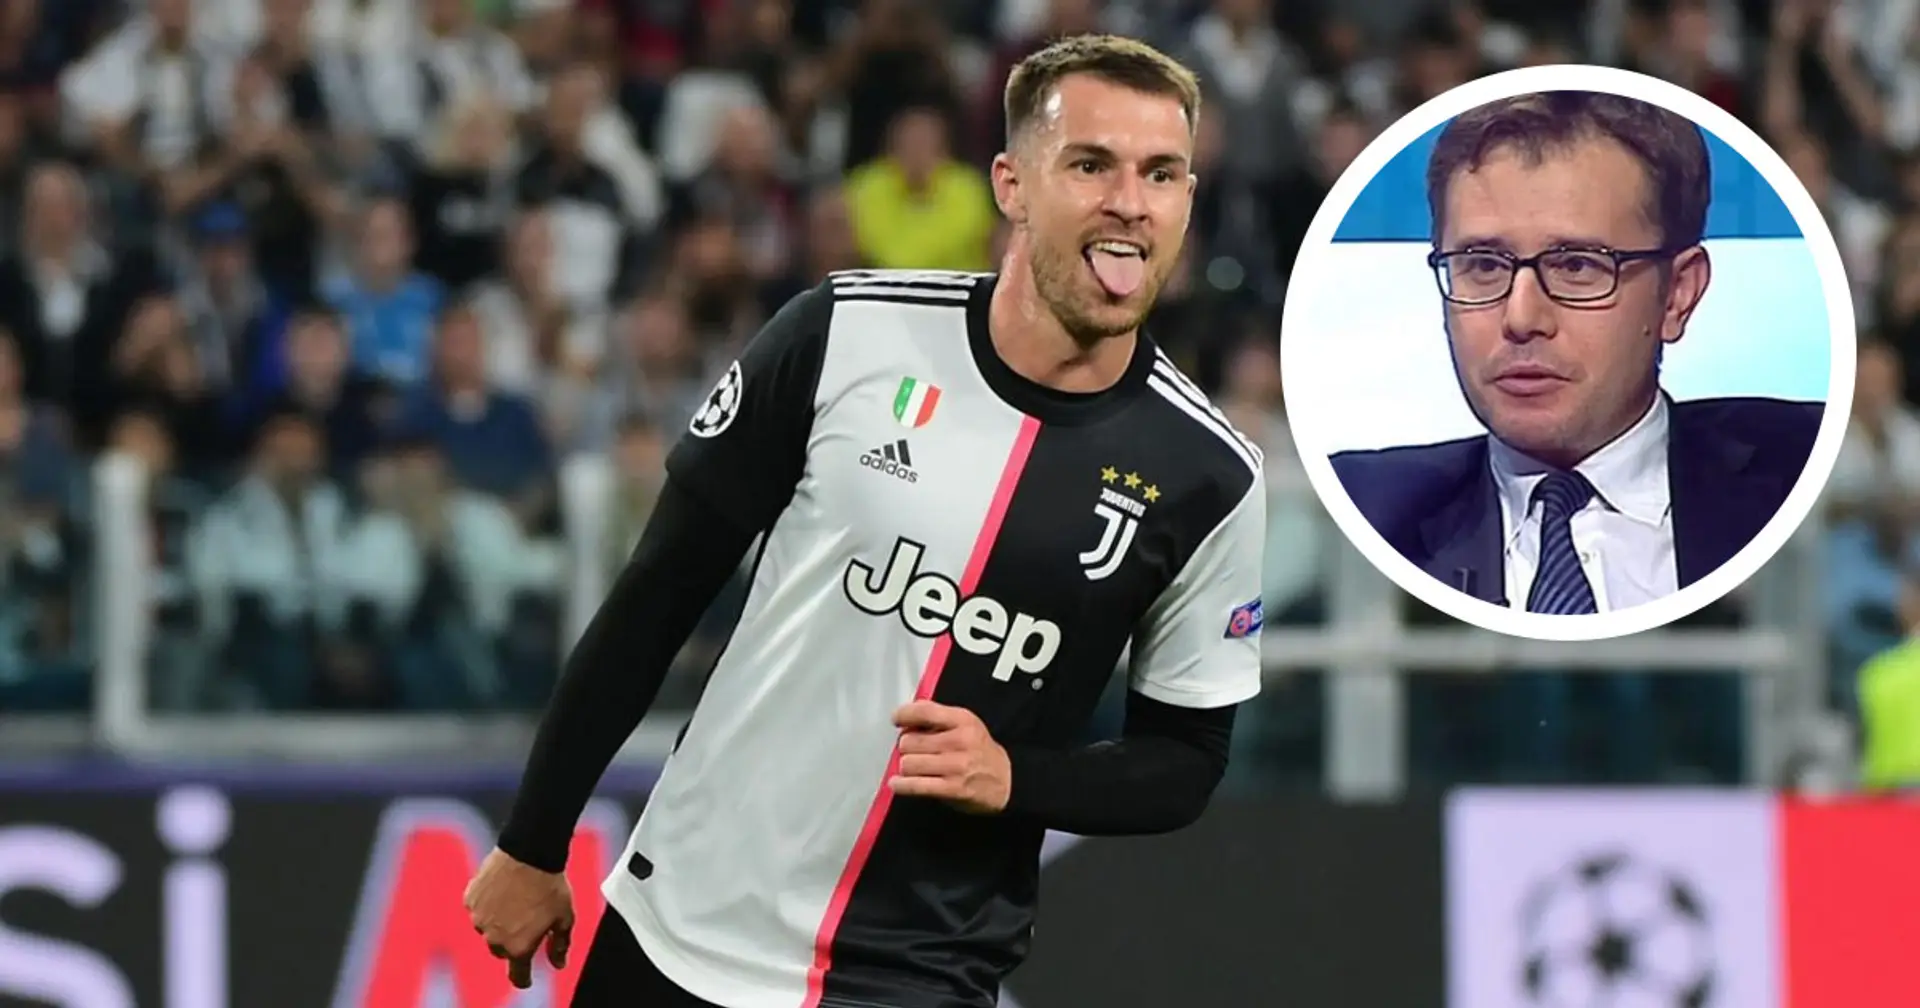 "L'uomo giusto per dare equilibrio alla Juve è Aaron Ramsey": Pavan analizza la nuova disposizione tattica di Pirlo